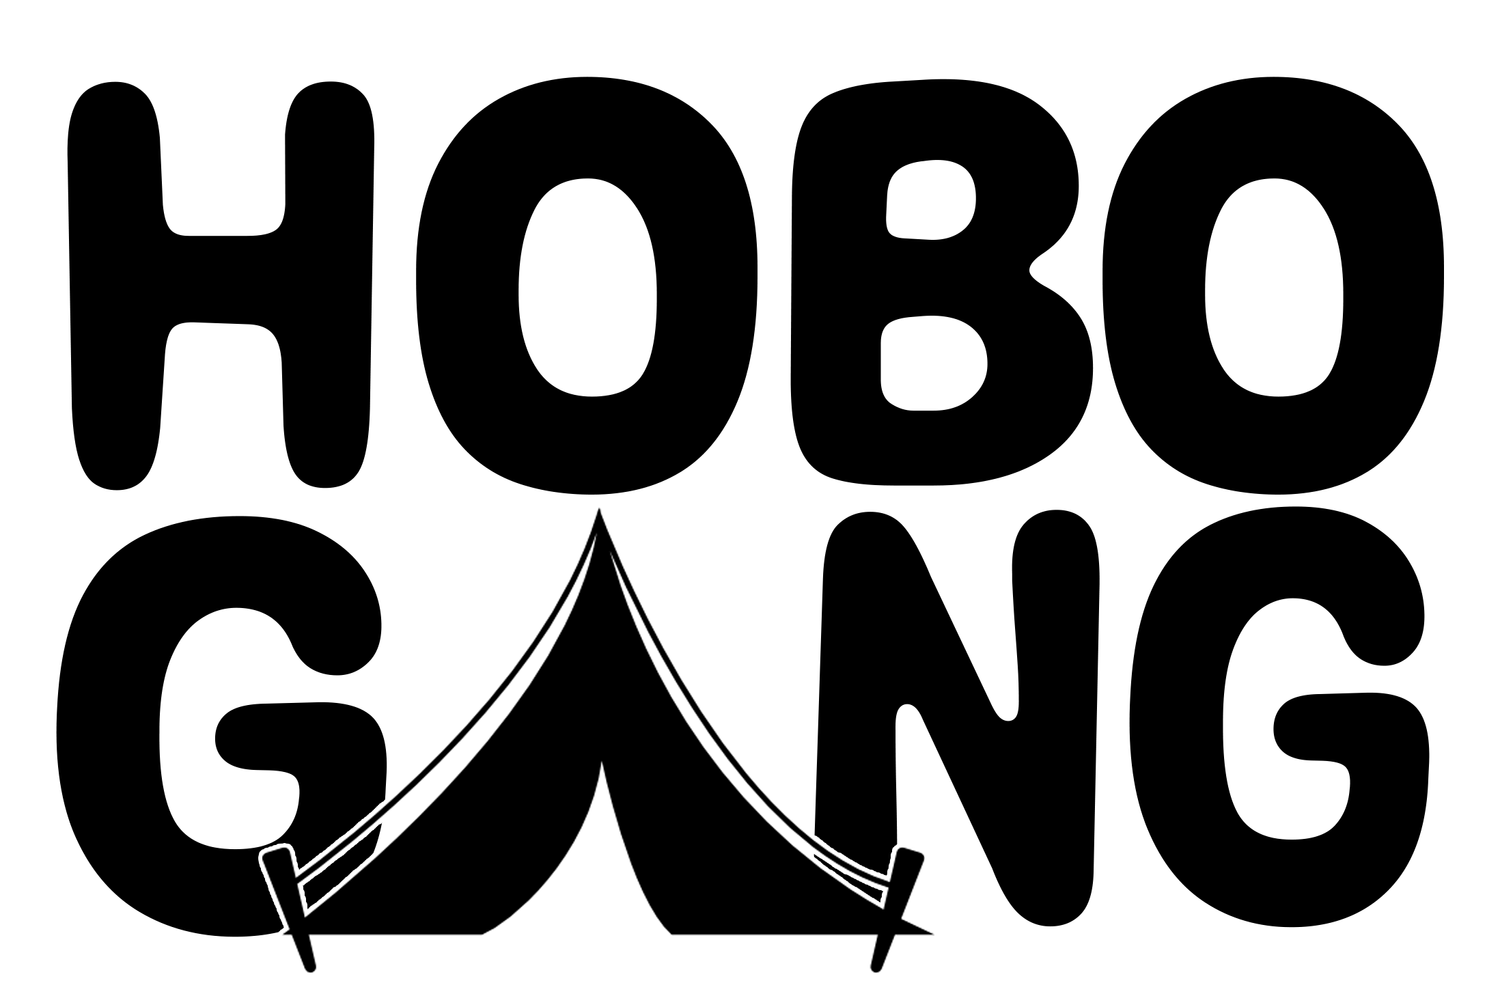 Hobo Gang